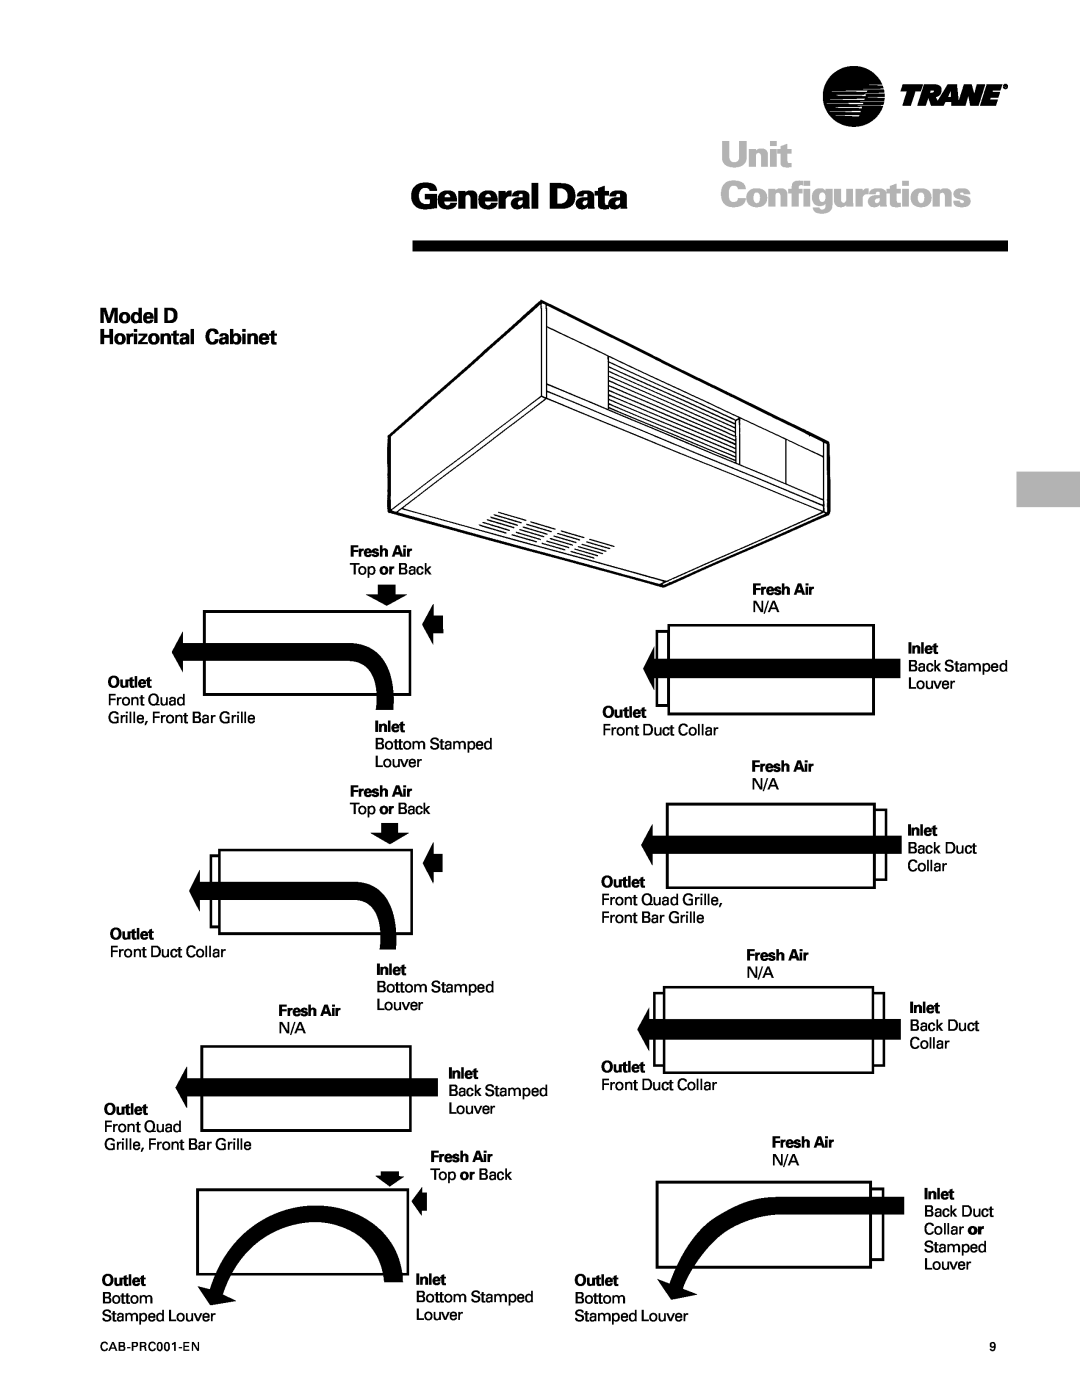 Trane CAB-PRC001-EN manual Unit, General Data, Configurations, Model D Horizontal Cabinet 